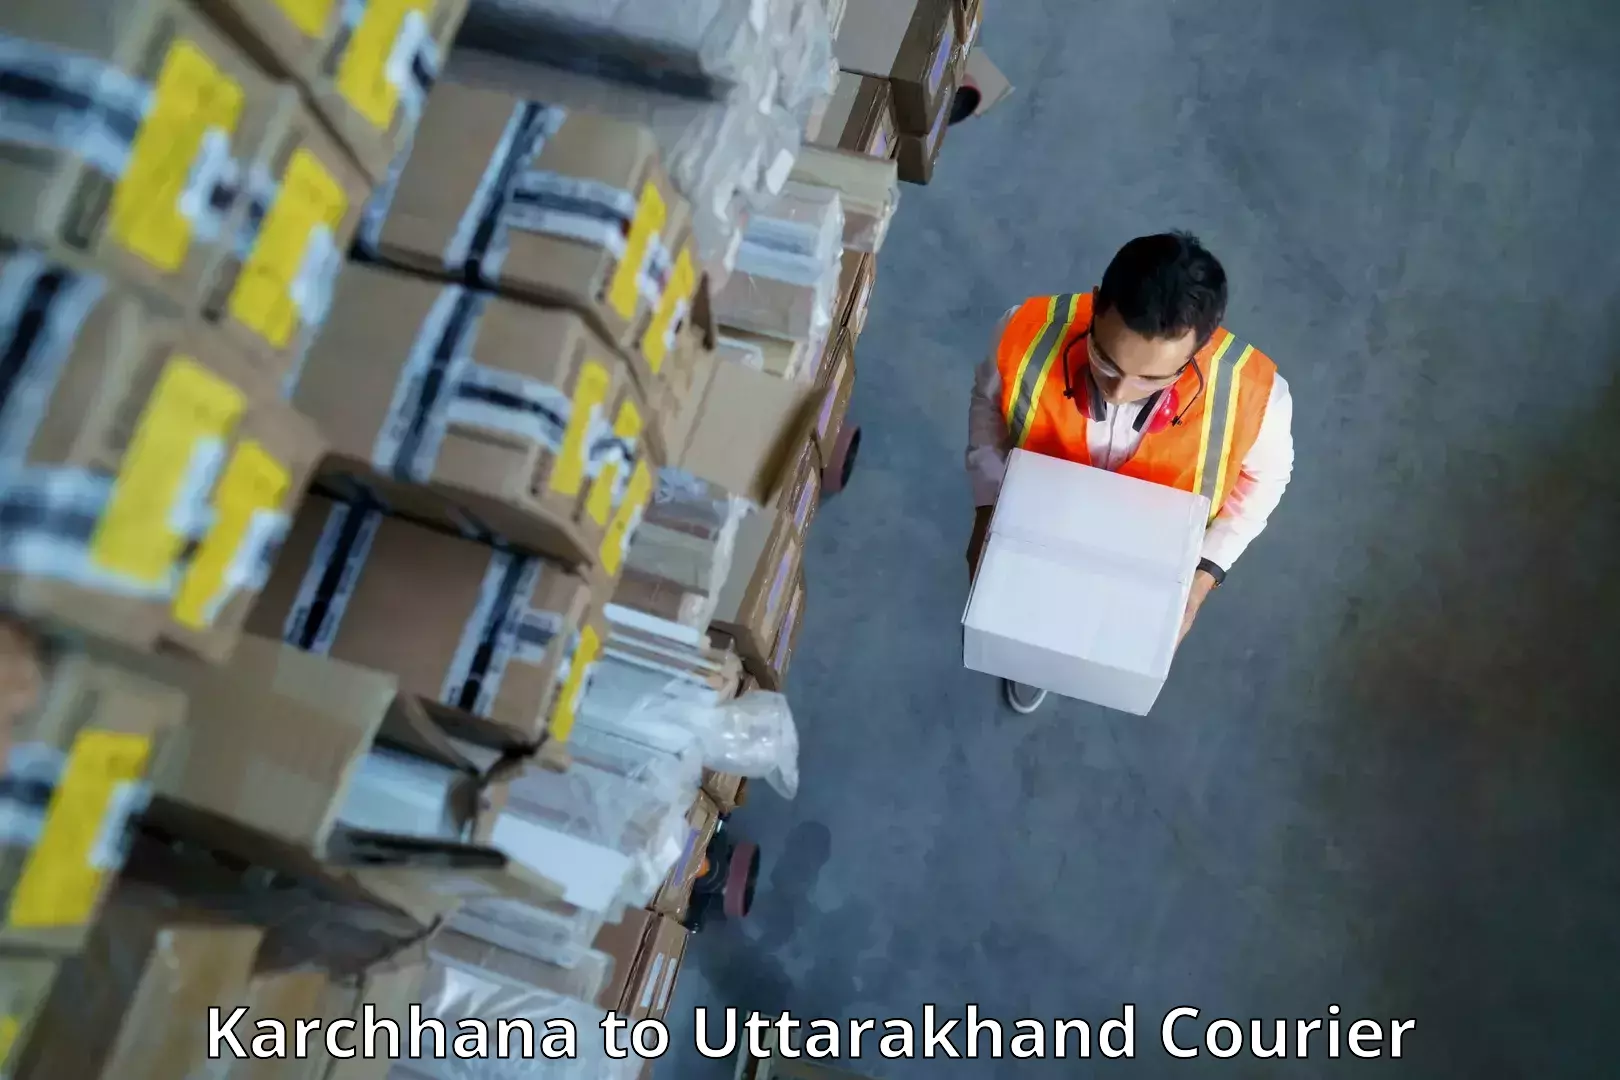 Premium delivery services Karchhana to Uttarakhand